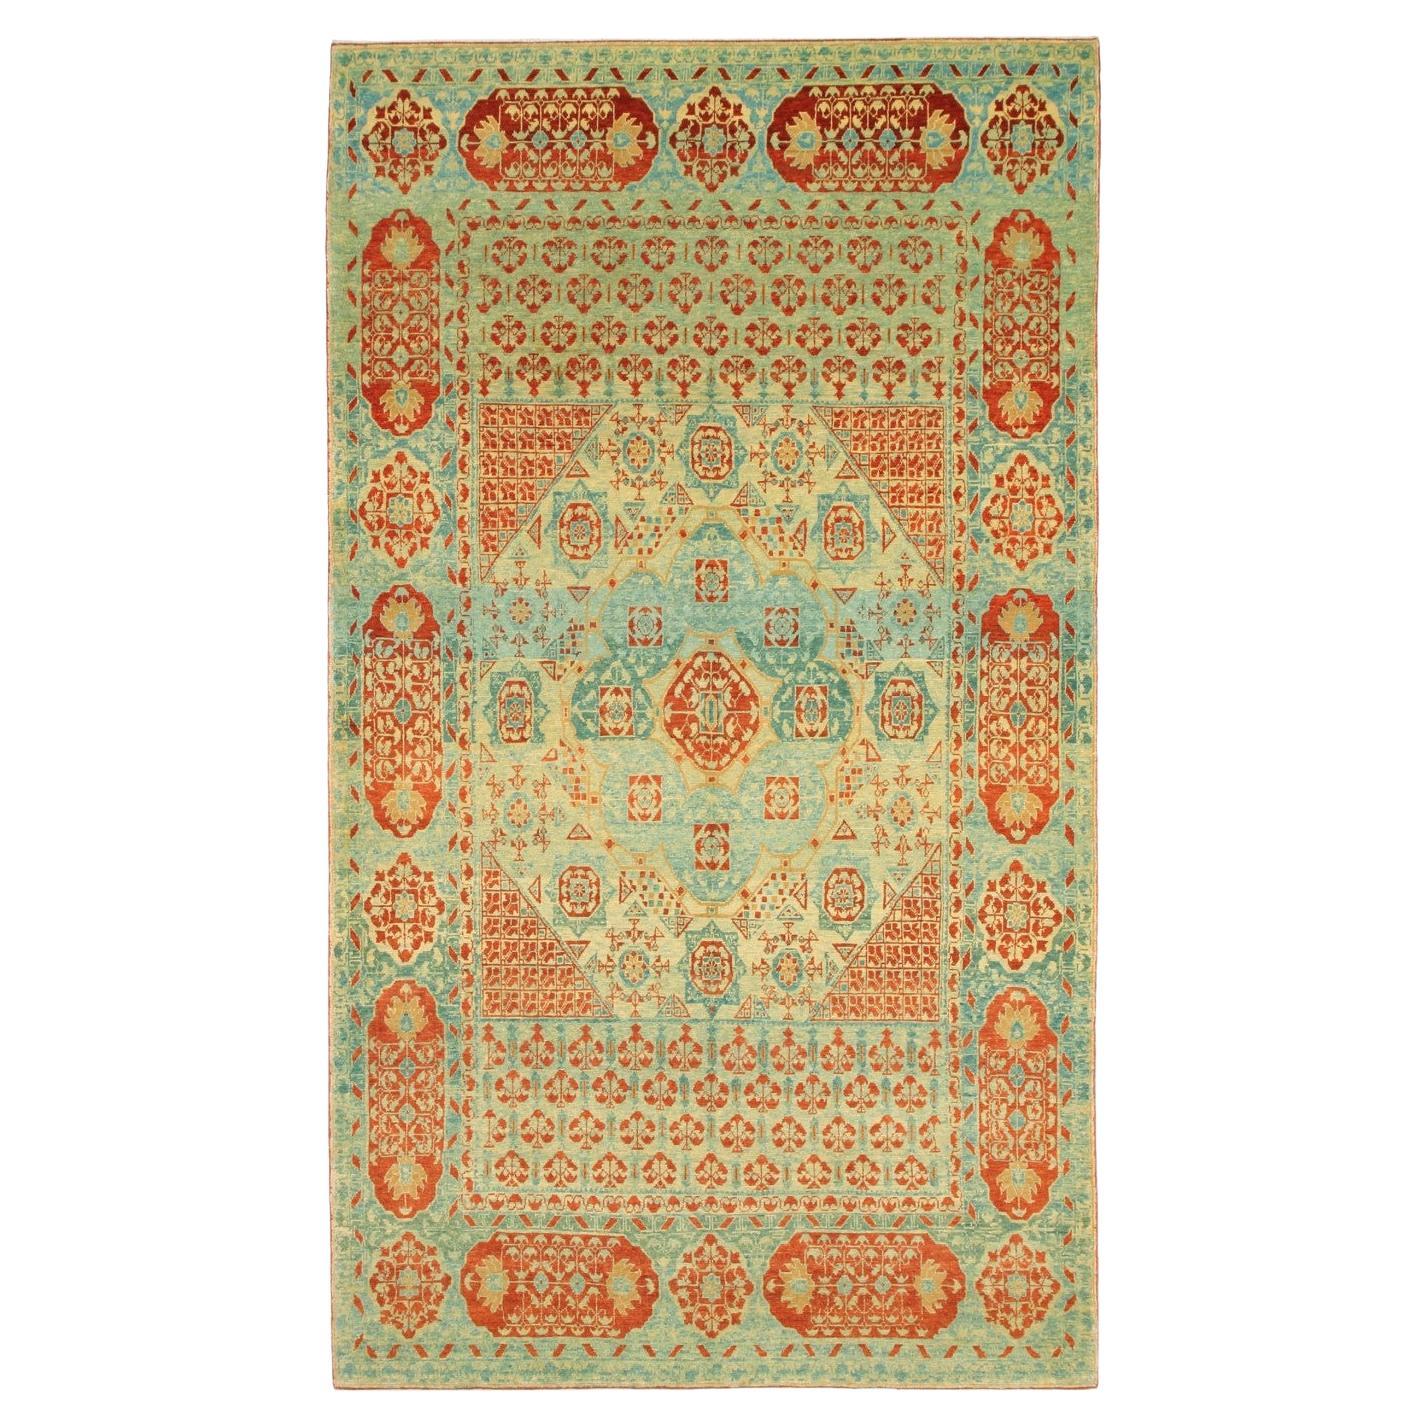 Ararat Rugs The Simonetti Mamluk Carpet 16th C. Revive Rug, Square Natural Dyed